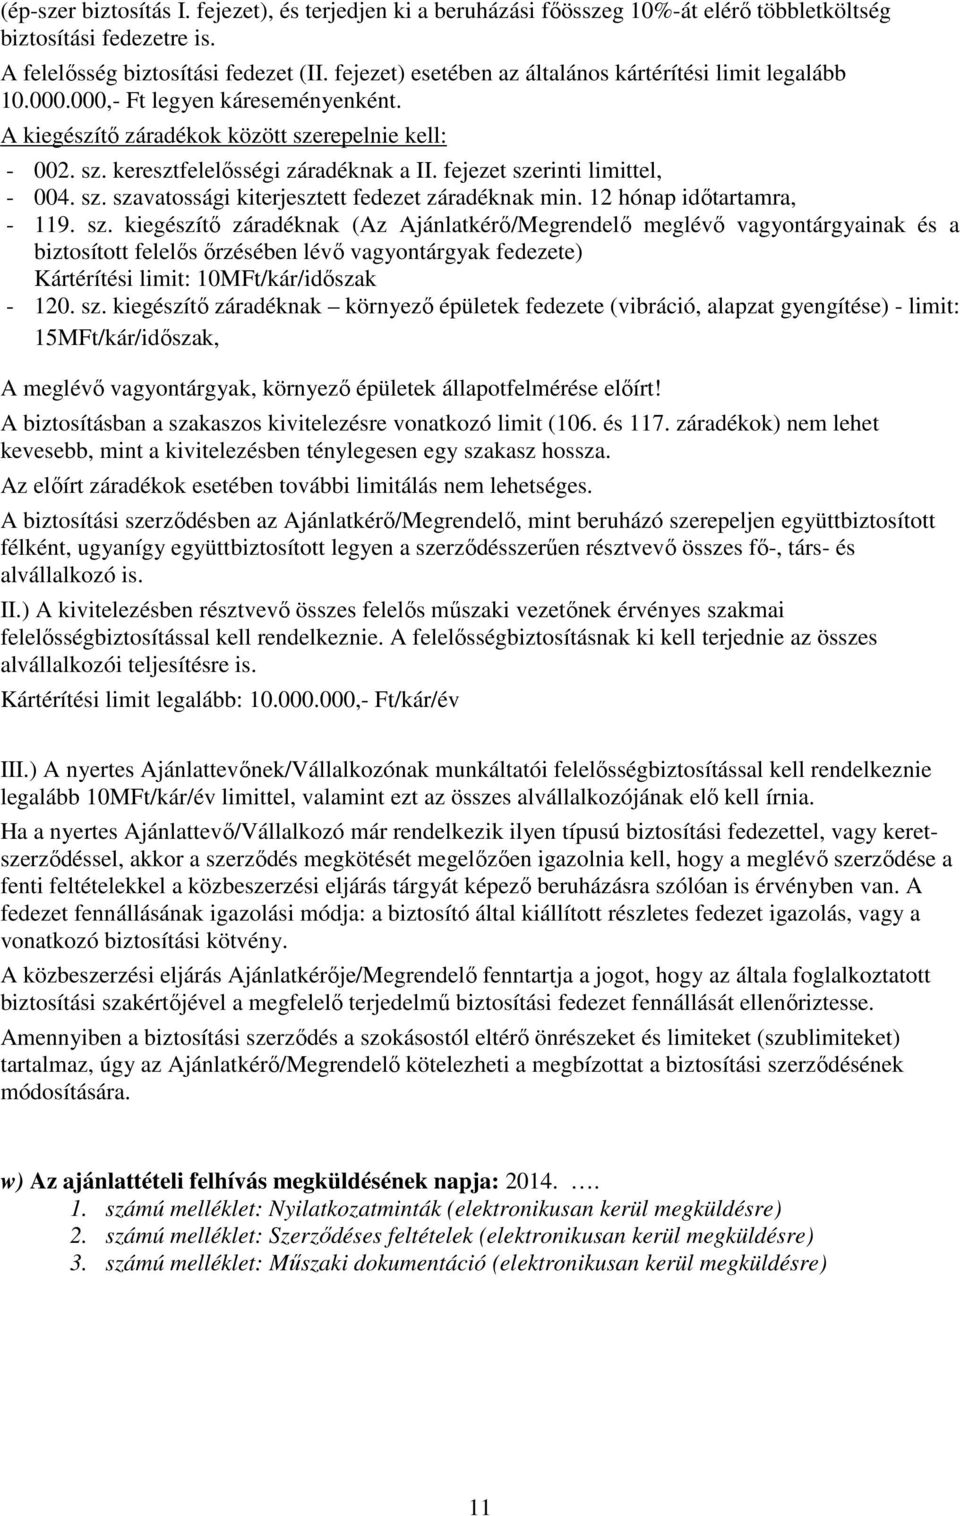 fejezet szerinti limittel, - 004. sz. szavatossági kiterjesztett fedezet záradéknak min. 12 hónap idıtartamra, - 119. sz. kiegészítı záradéknak (Az Ajánlatkérı/Megrendelı meglévı vagyontárgyainak és a biztosított felelıs ırzésében lévı vagyontárgyak fedezete) Kártérítési limit: 10MFt/kár/idıszak - 120.